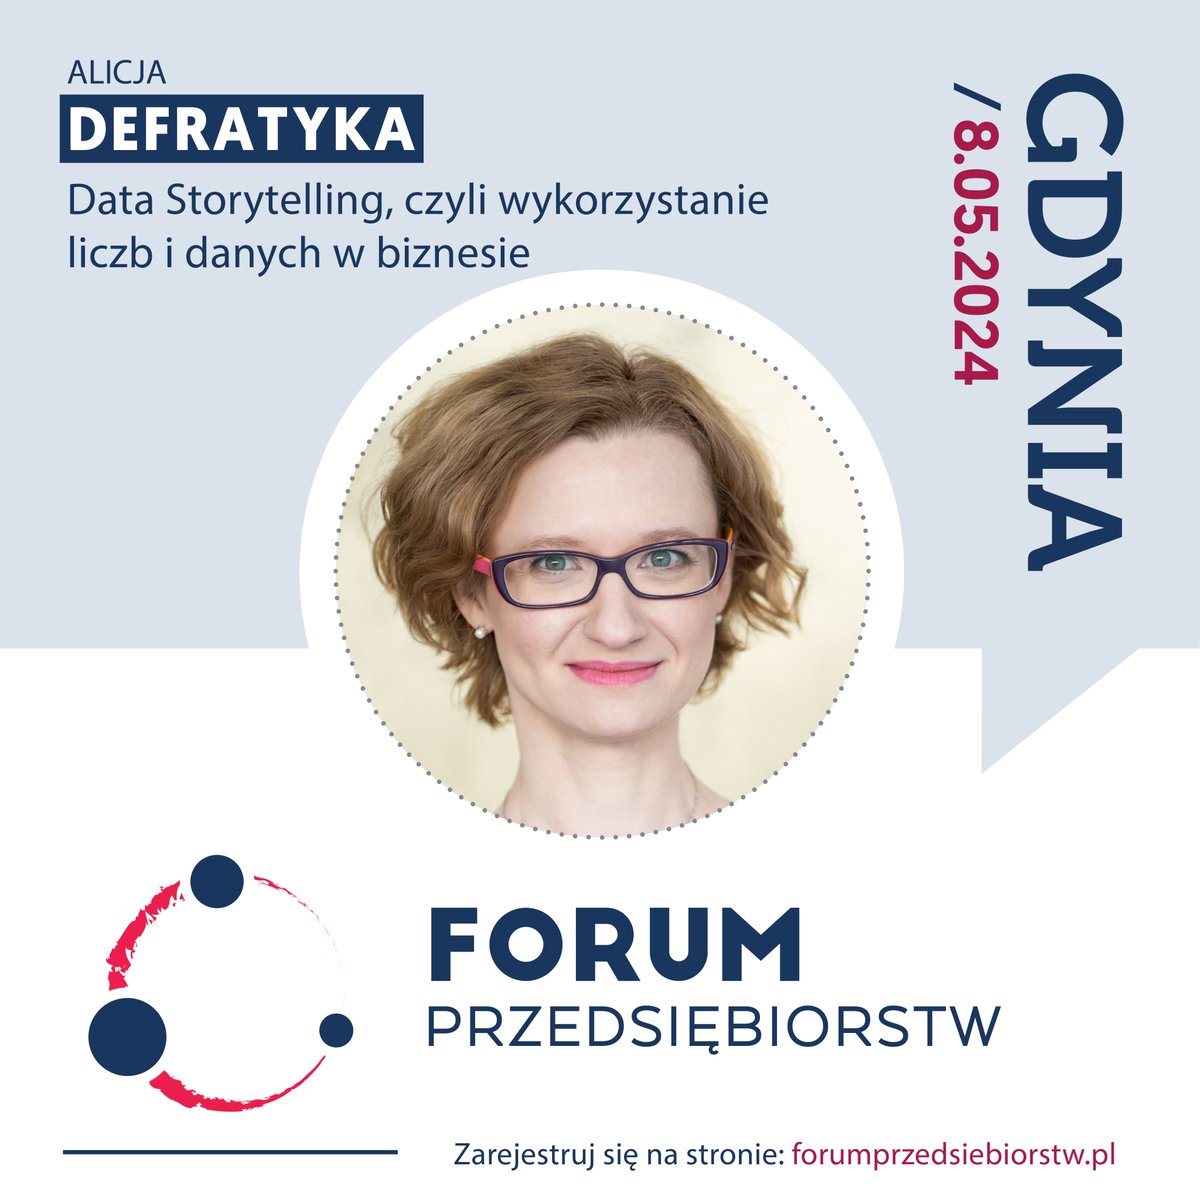 8 maja będę miała przyjemność wystąpić na #ForumPrzedsiębiorstw w Gdyni z tematem „Data Storytelling, czyli wykorzystanie liczb i danych w biznesie”. Zapraszam 🙂 Program i rejestracja są dostępne tutaj: forumprzedsiebiorstw.pl